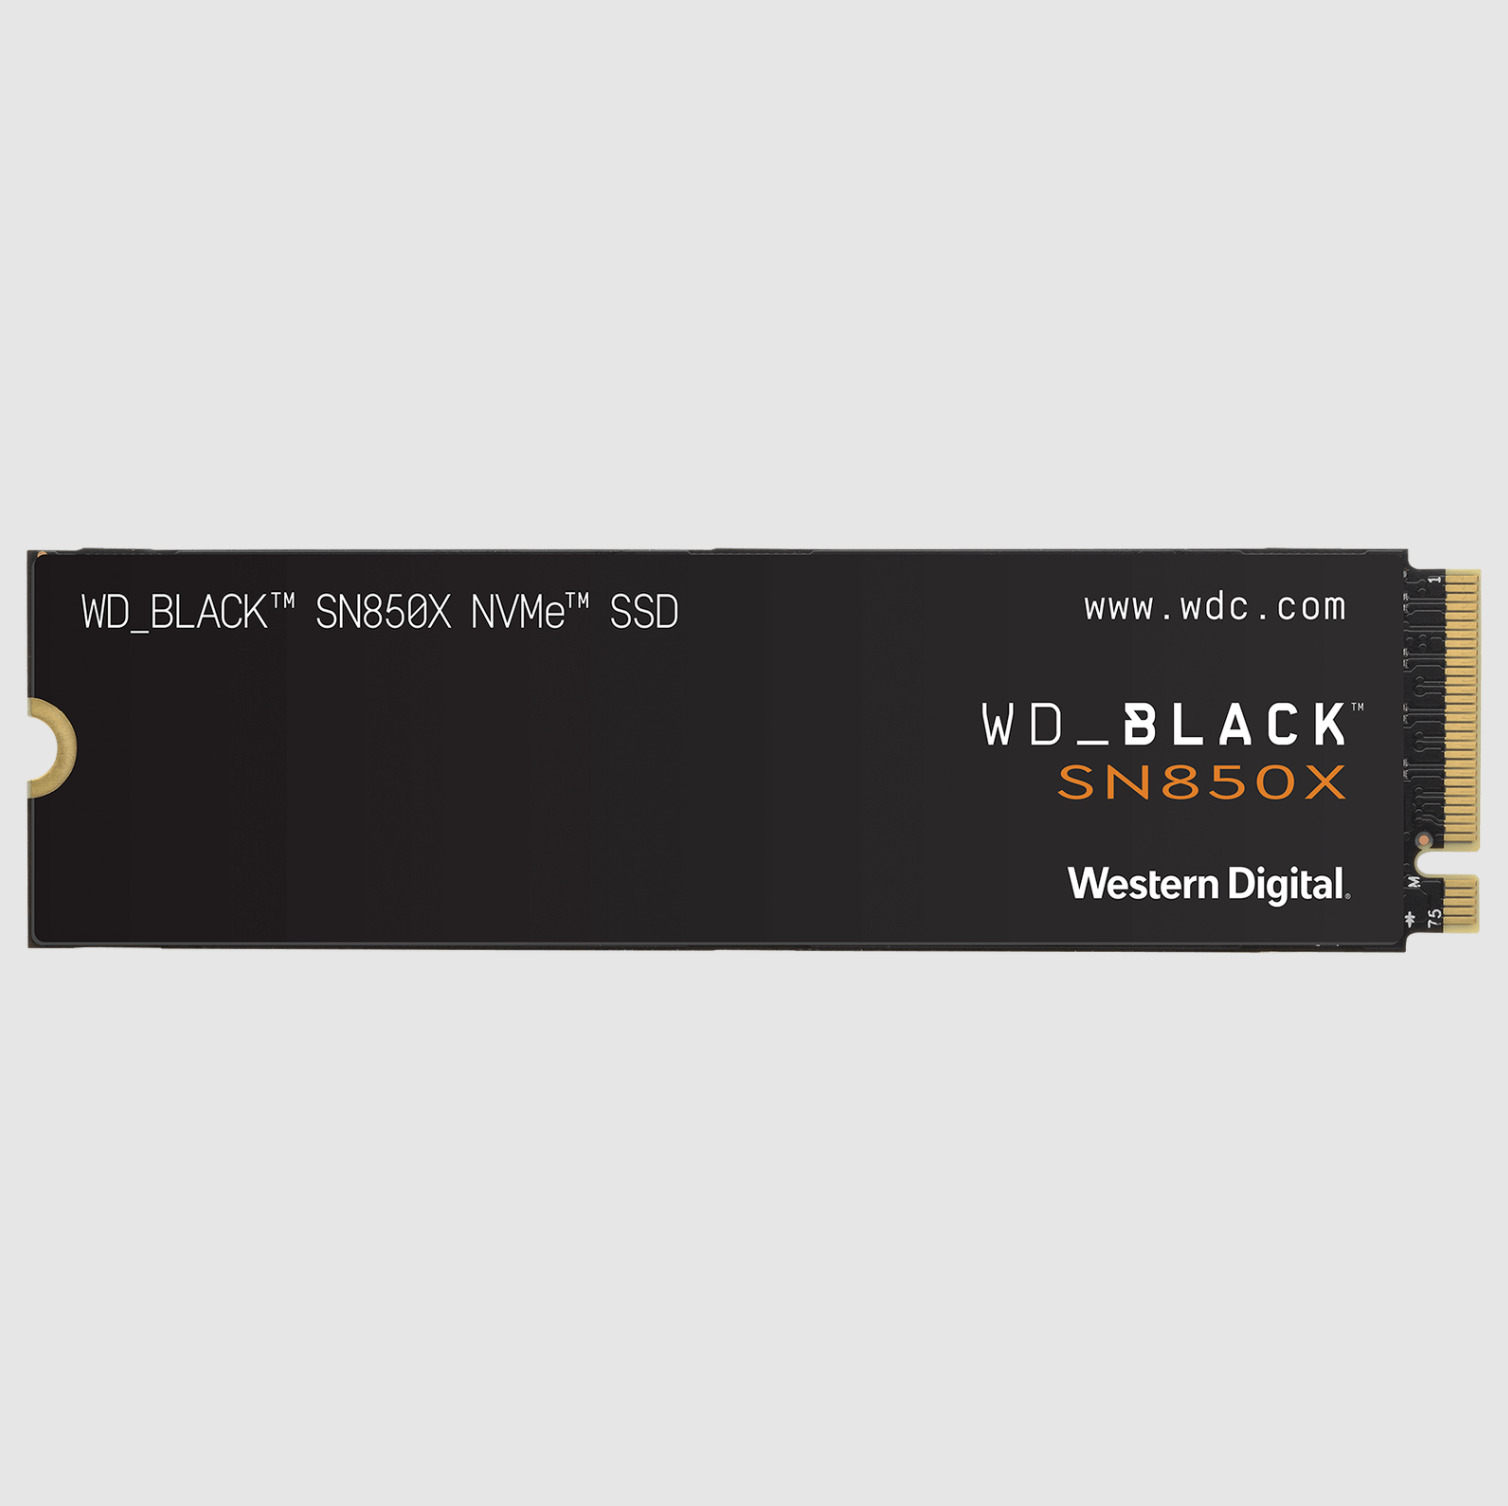 WD BLACK 4TB SN850X NVMe SSD - WDS400T2X0E - Brand New - Factory Sealed Box